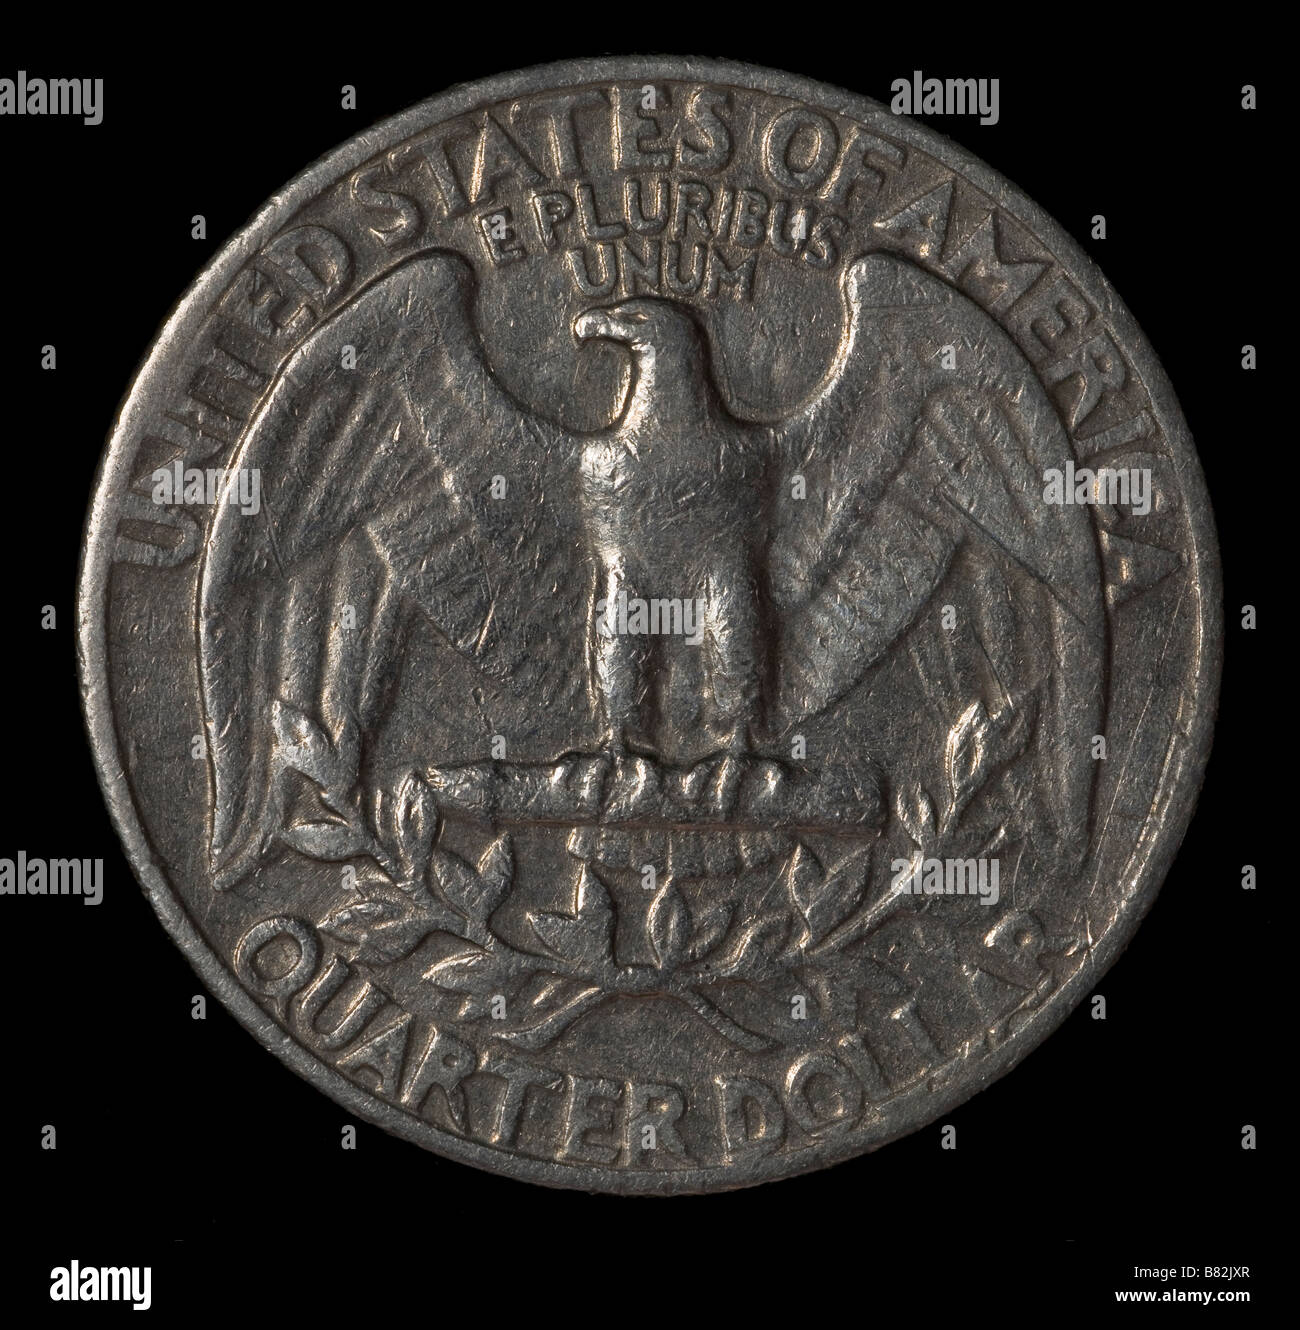 USA quarter 25 cents coin Stock Photo